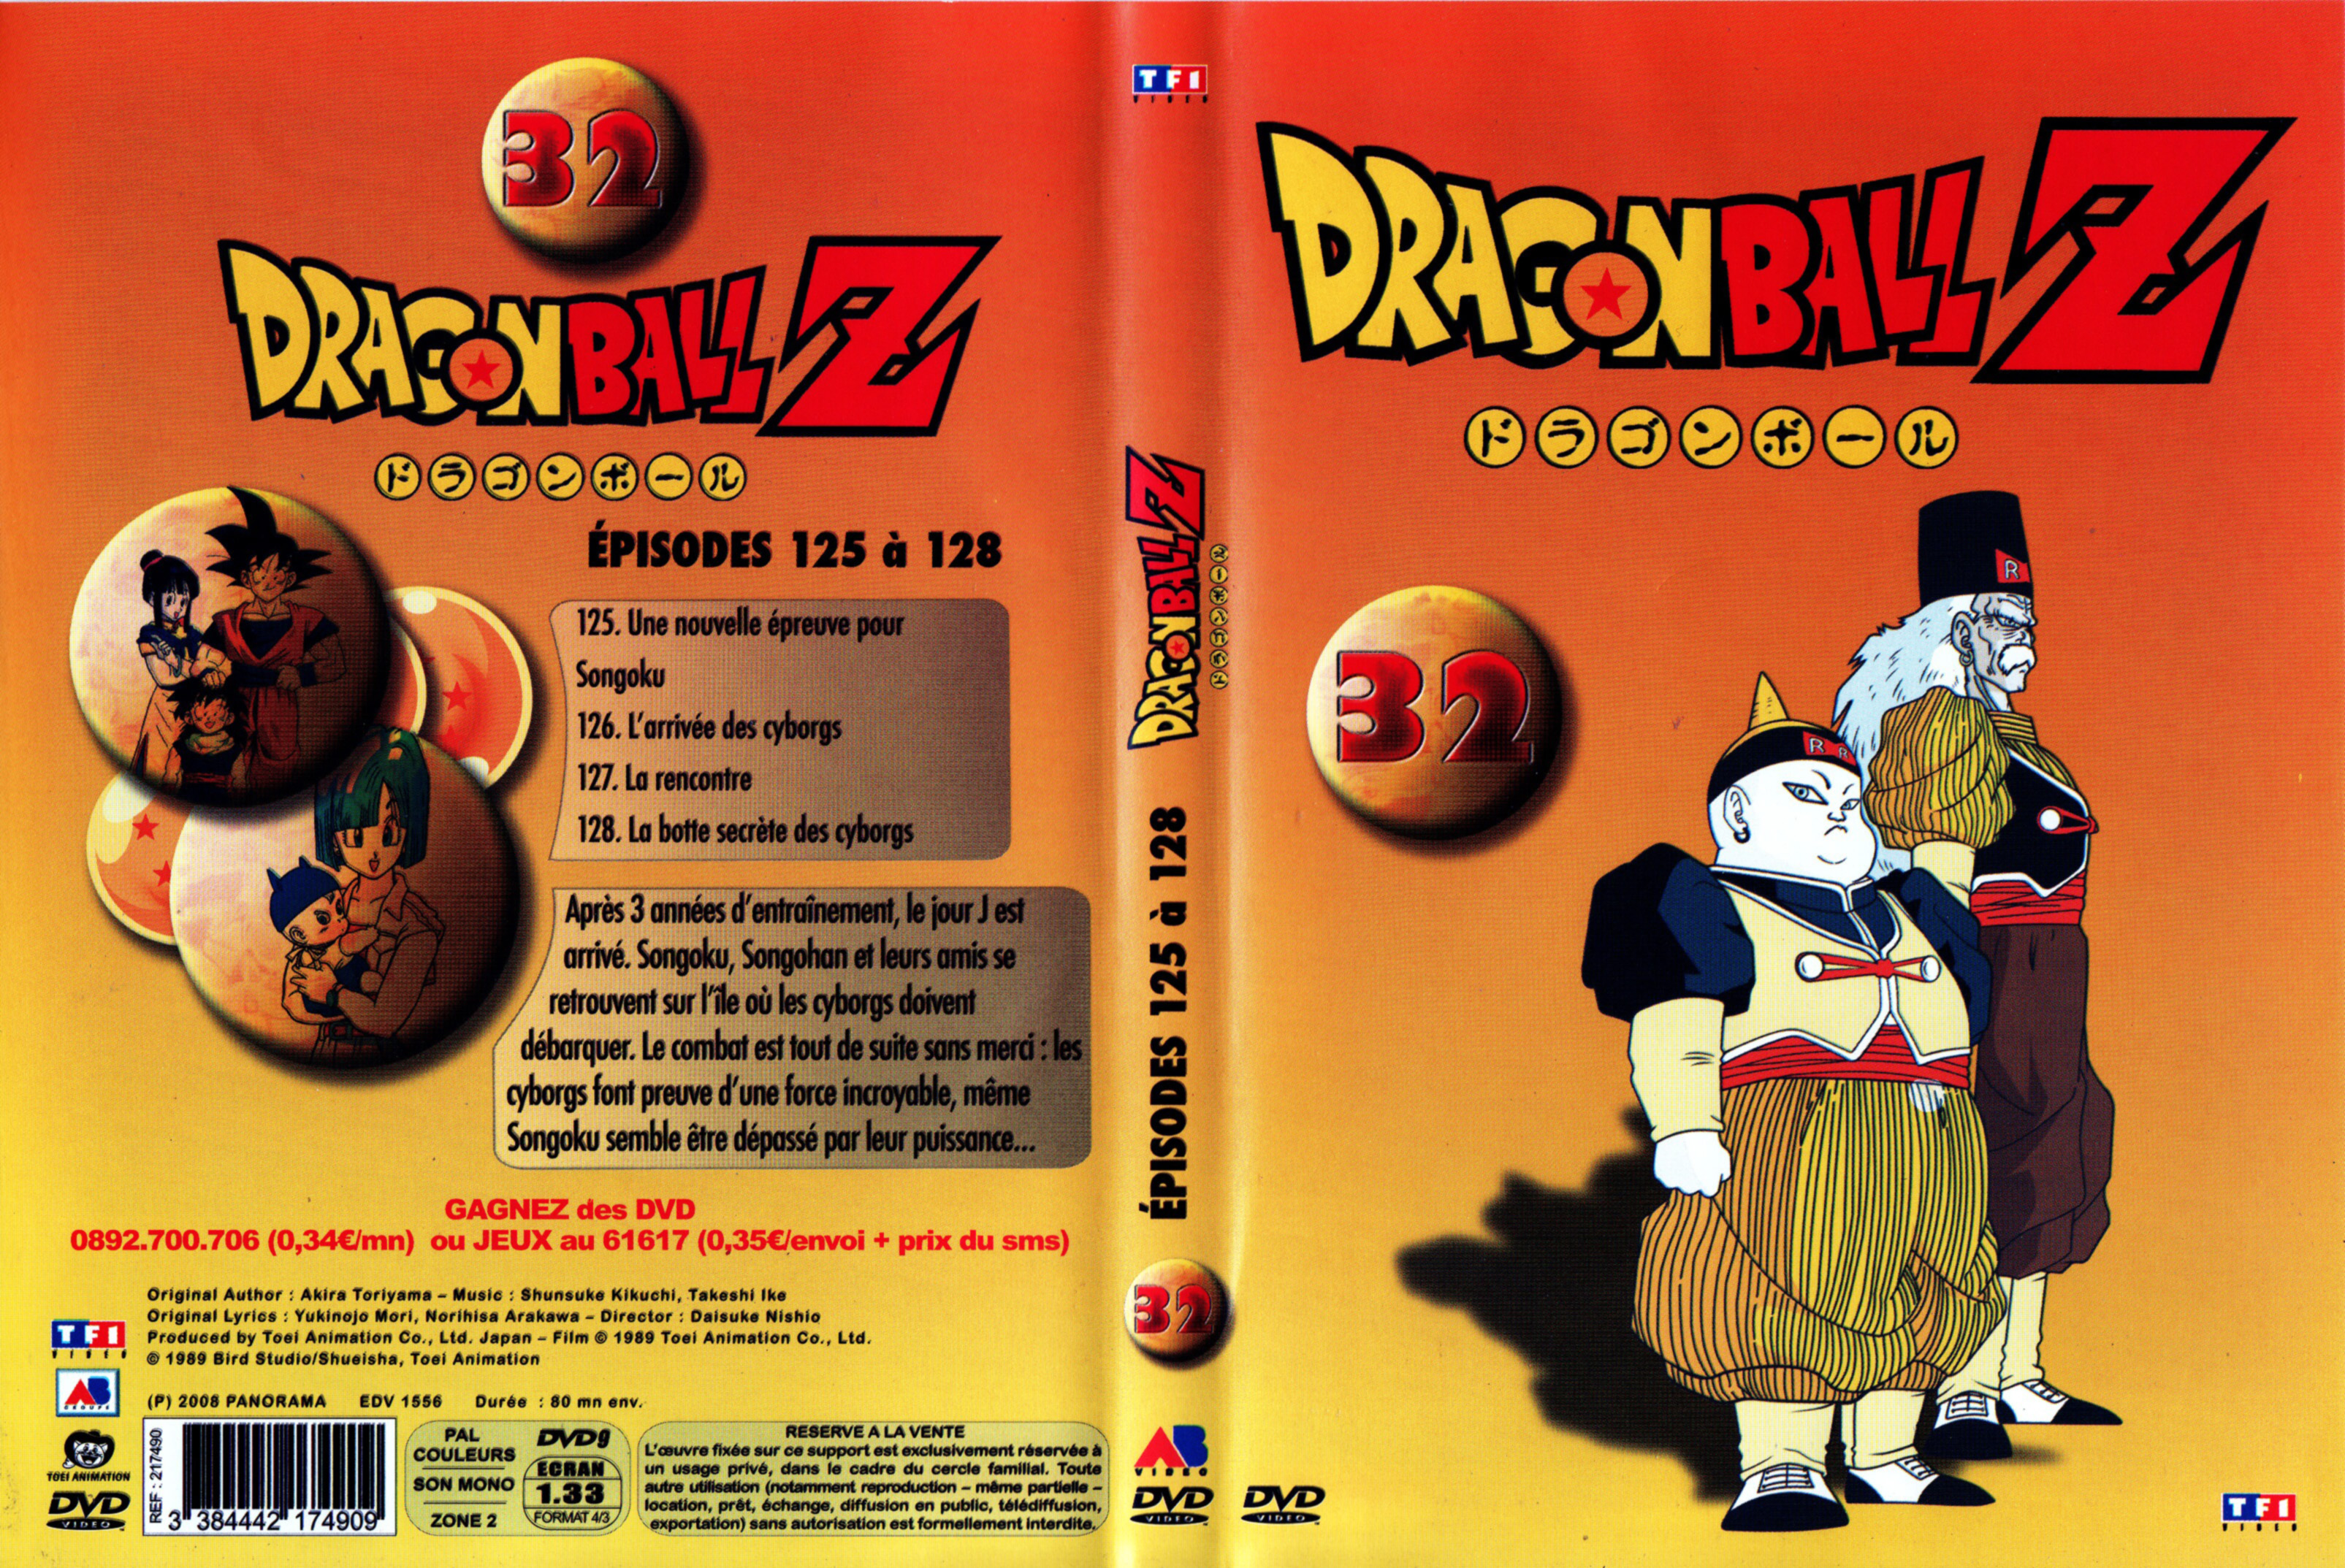 Jaquette DVD Dragon Ball Z vol 32 v3